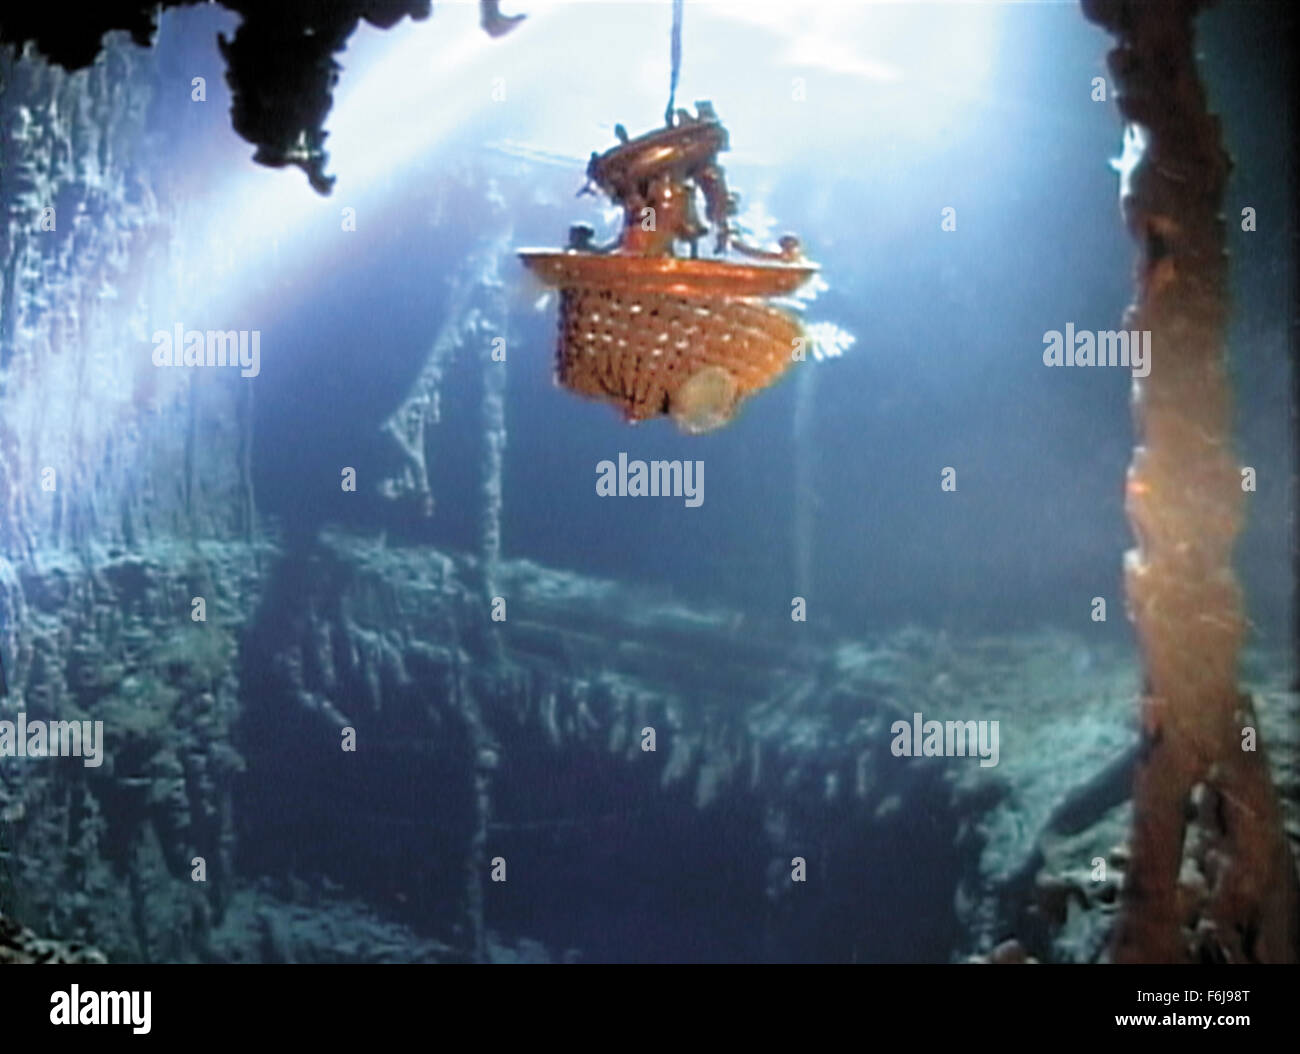 31. März 2003; Hollywood, Kalifornien, USA; Unterwasser Schuss von der Titanic aus der Familie Dokumentation '' Ghosts of the Abyss'' unter der Regie von James Cameron. Stockfoto